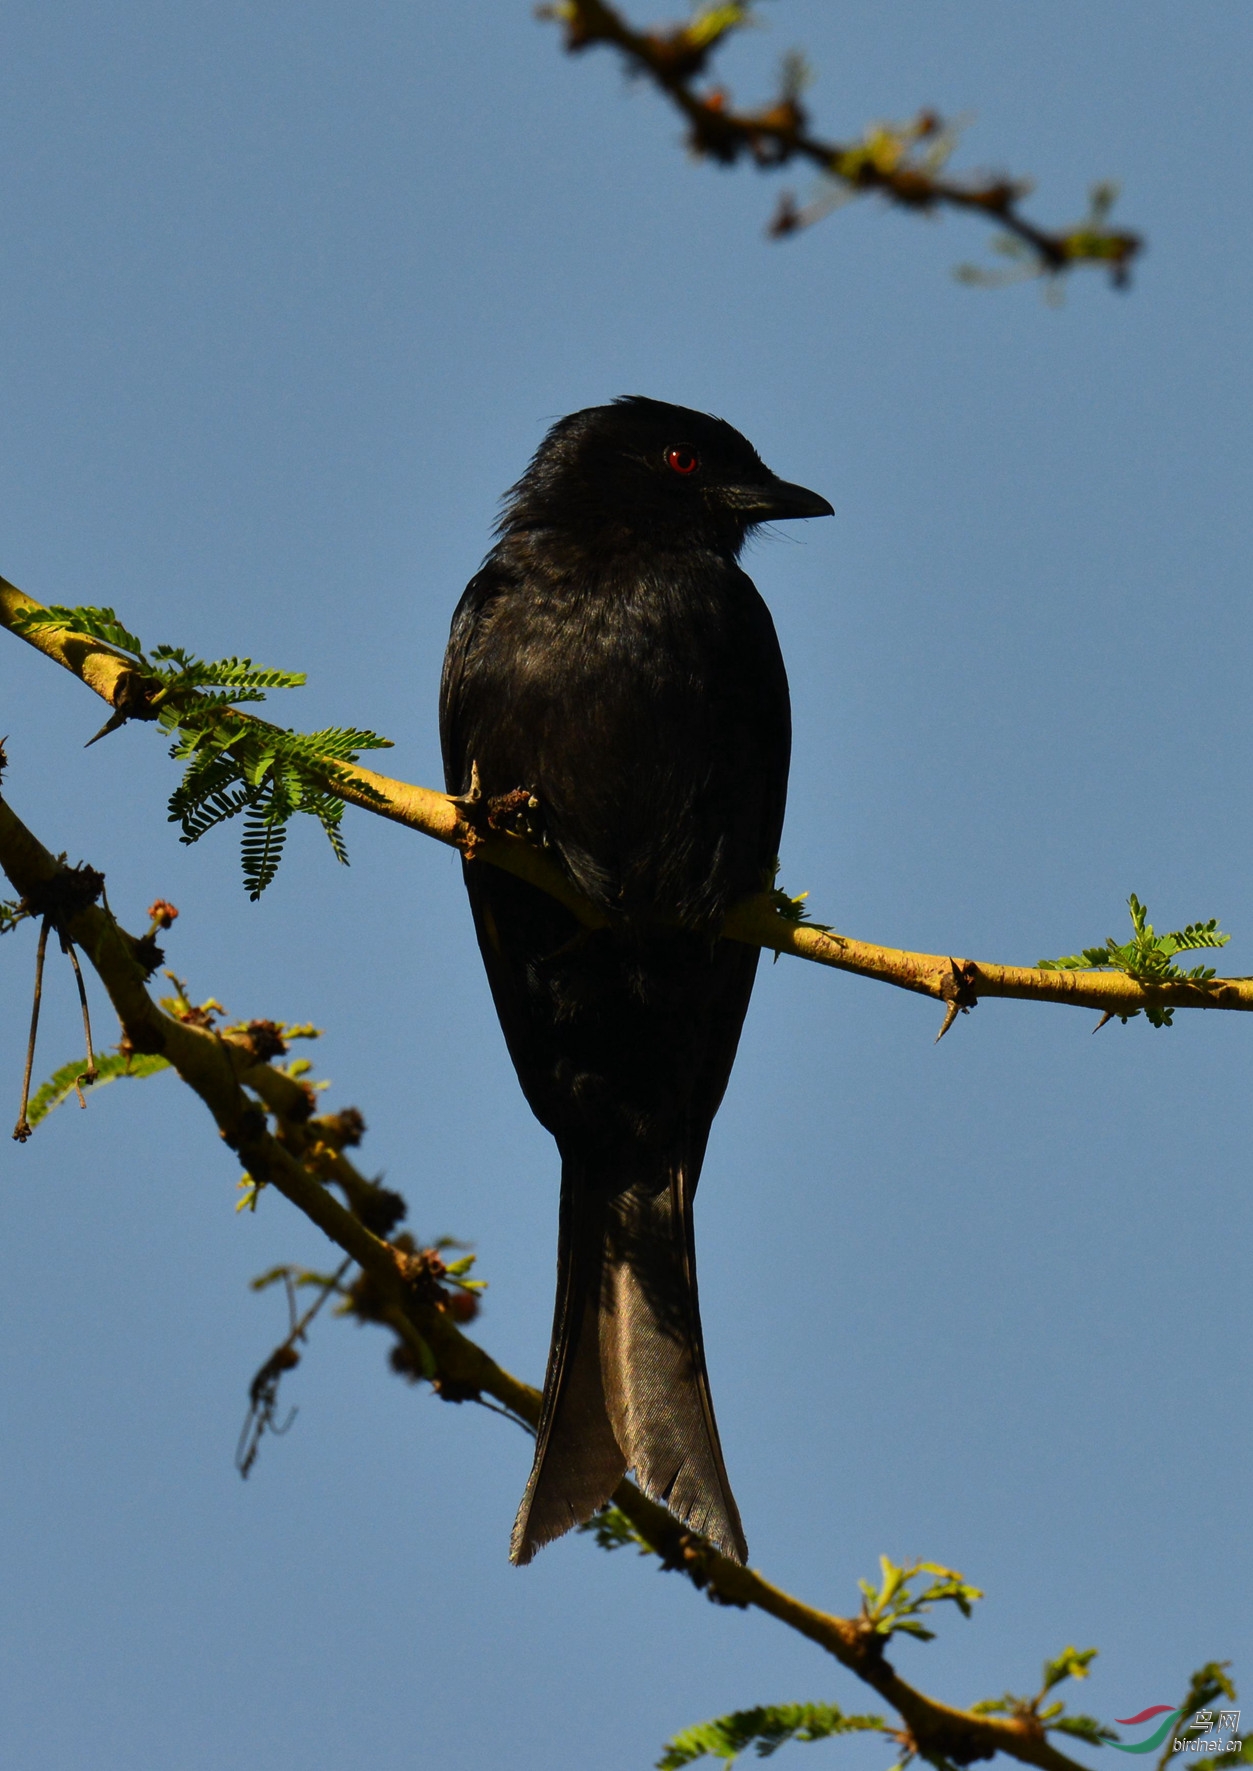 请问这只黑鸟叫什么名字?